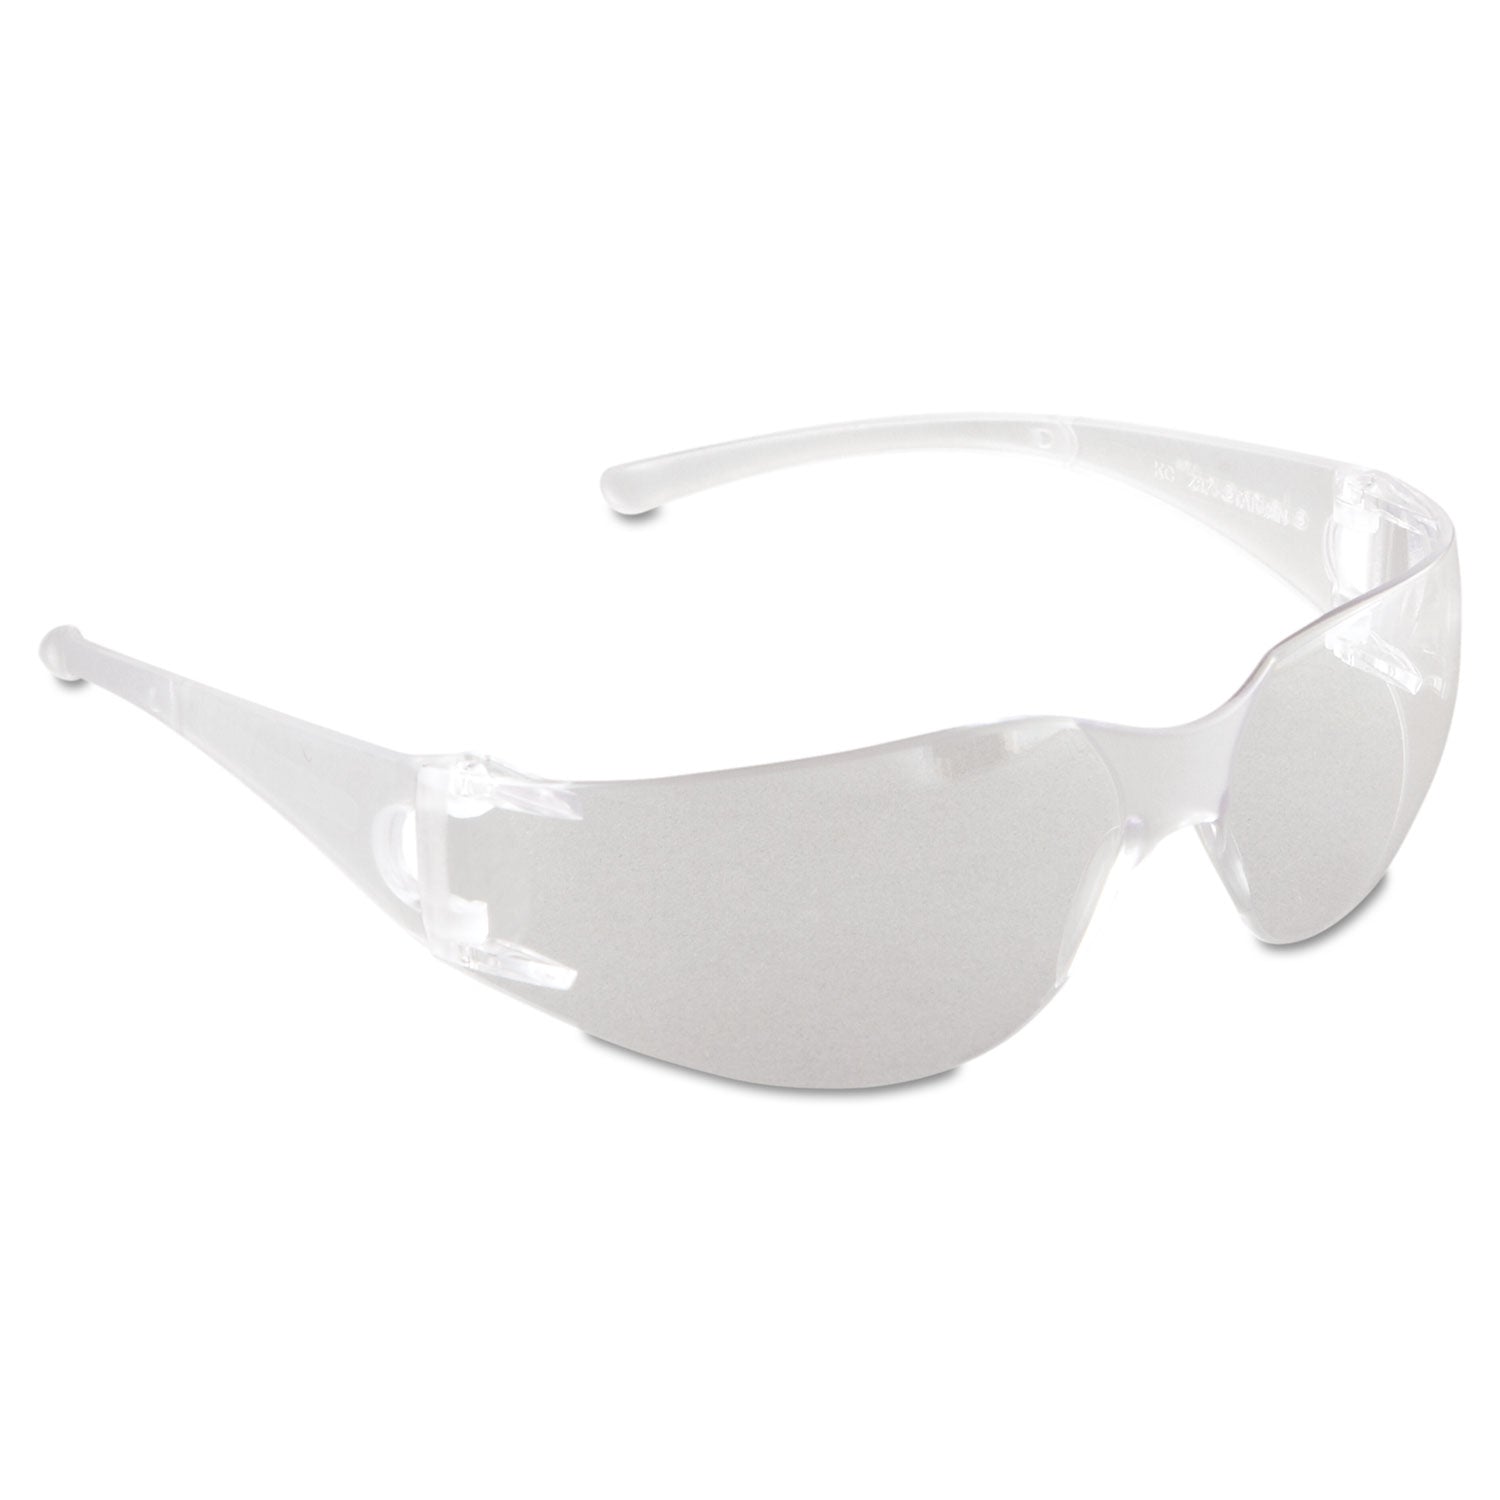 V10 Element Safety Glasses, Clear Frame, Clear Lens - 